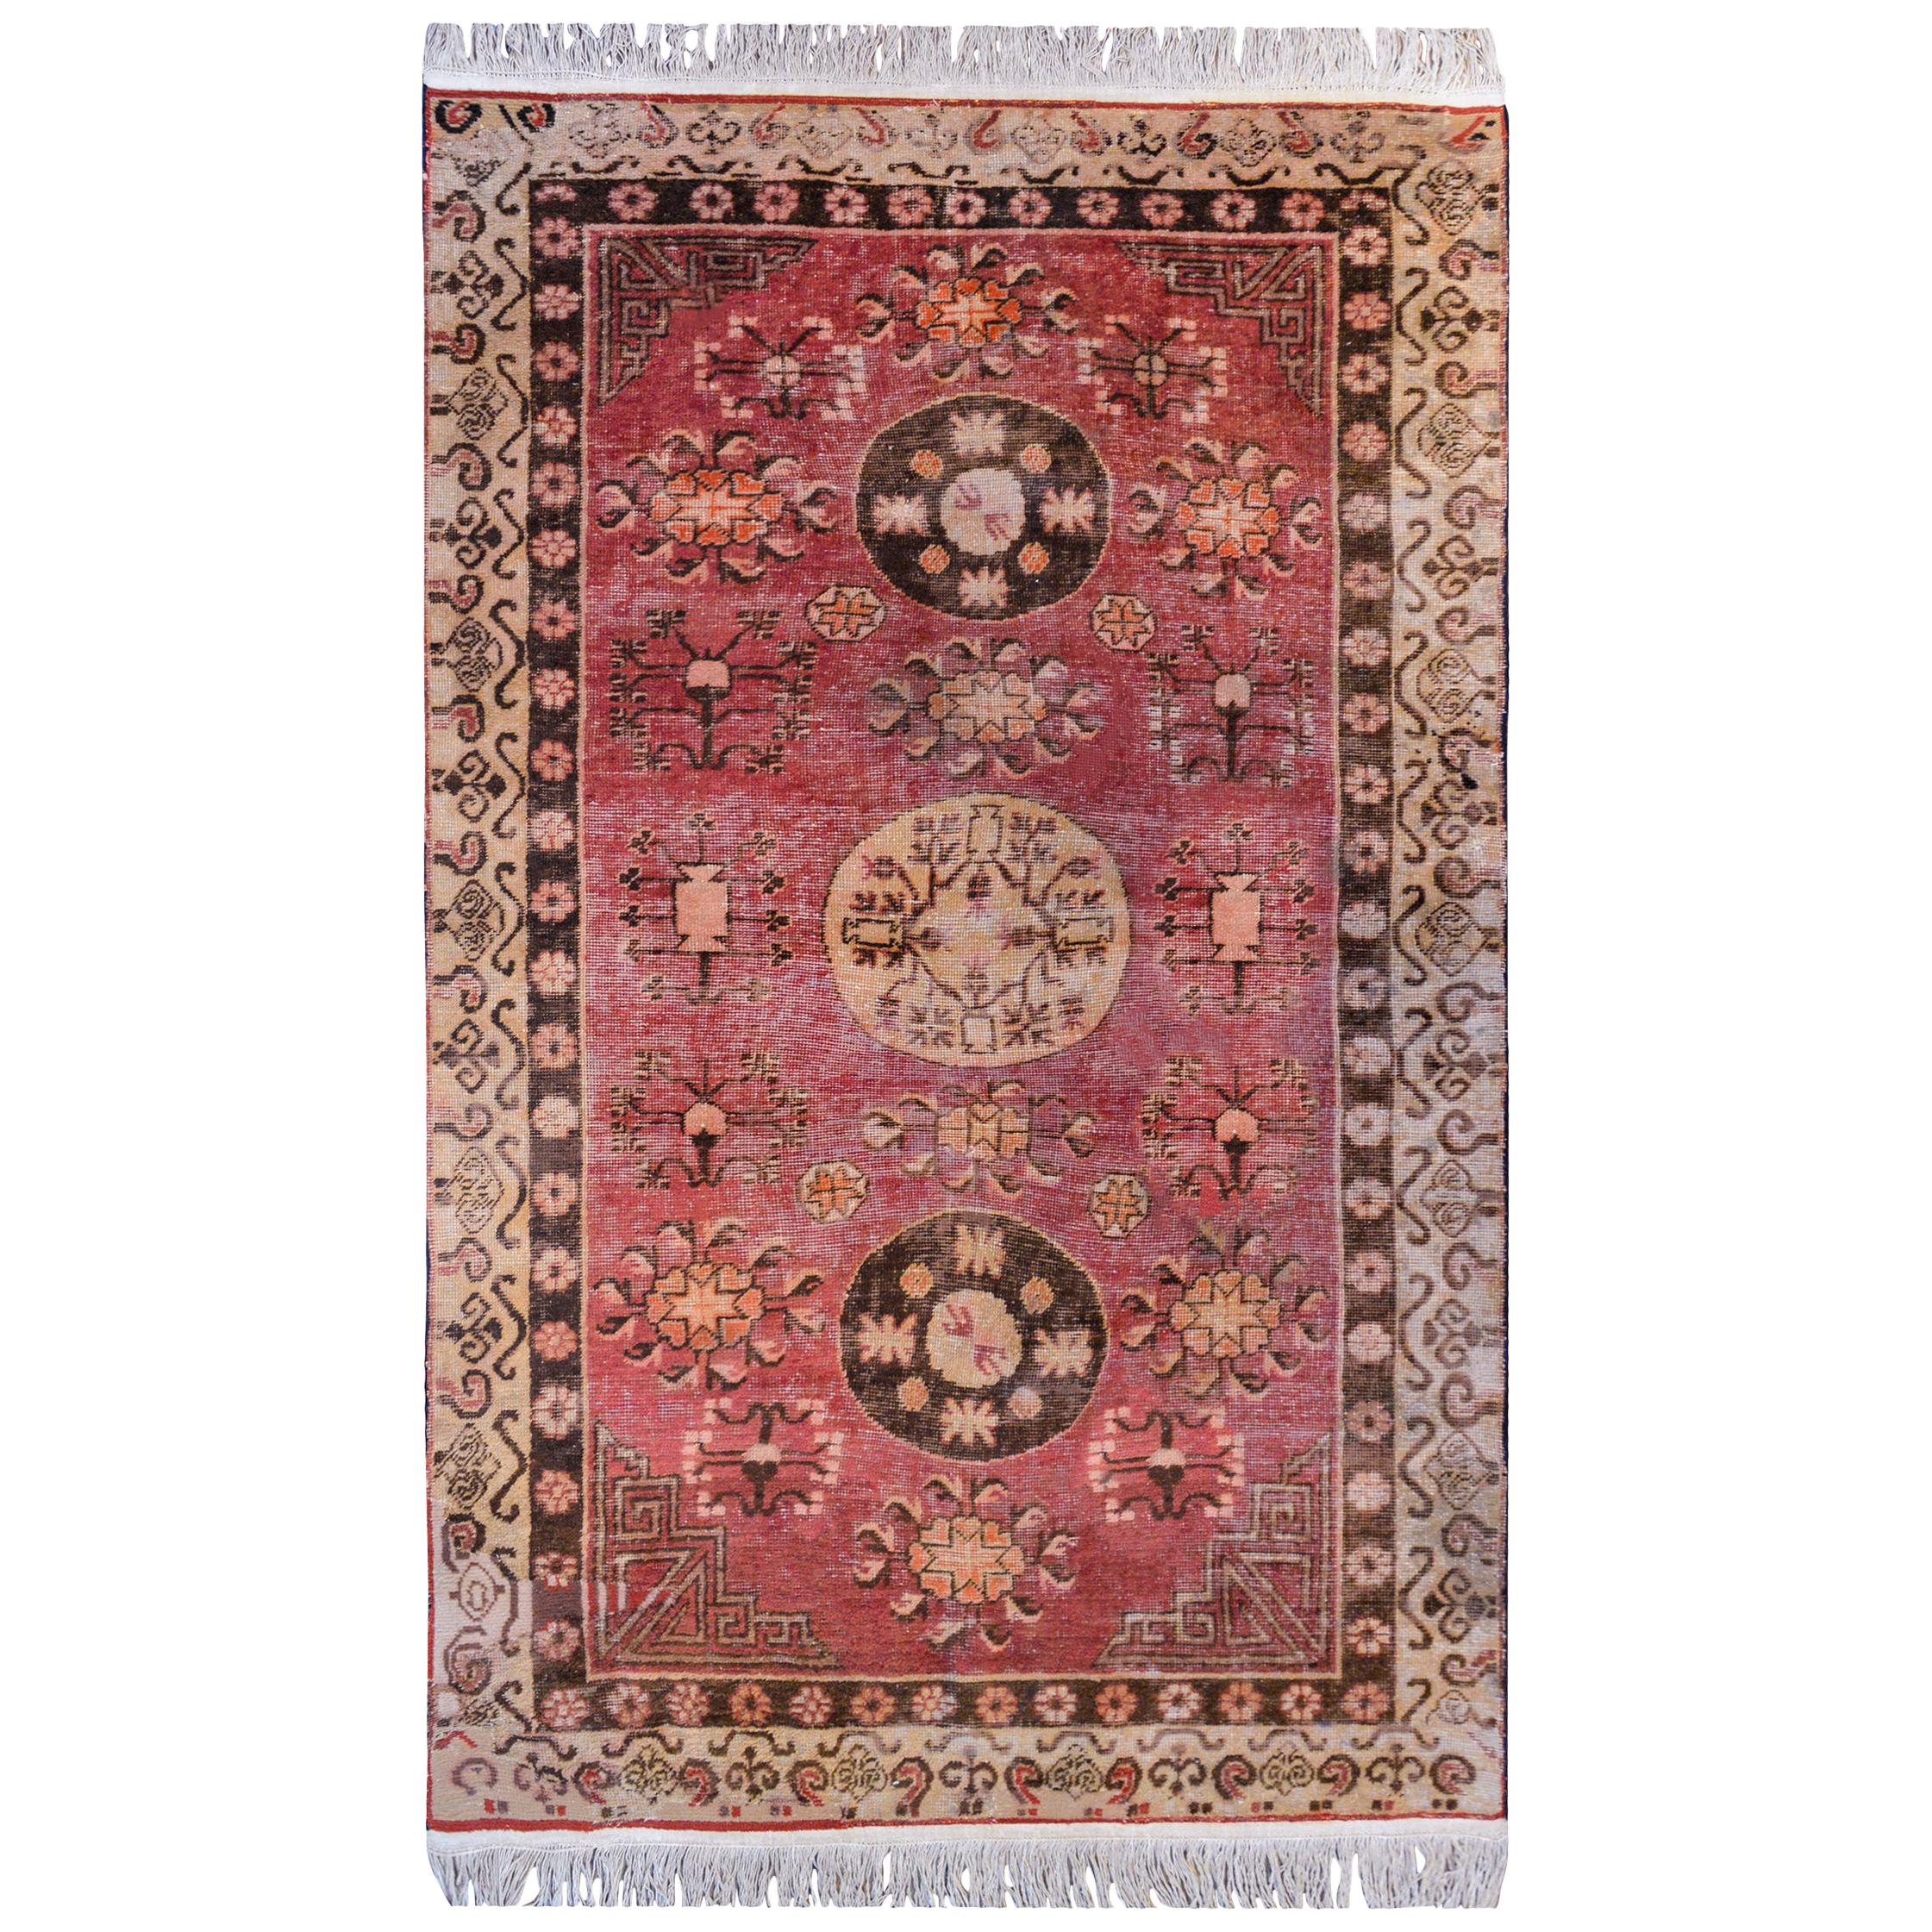 Schöner Khotan-Teppich aus dem frühen 20. Jahrhundert